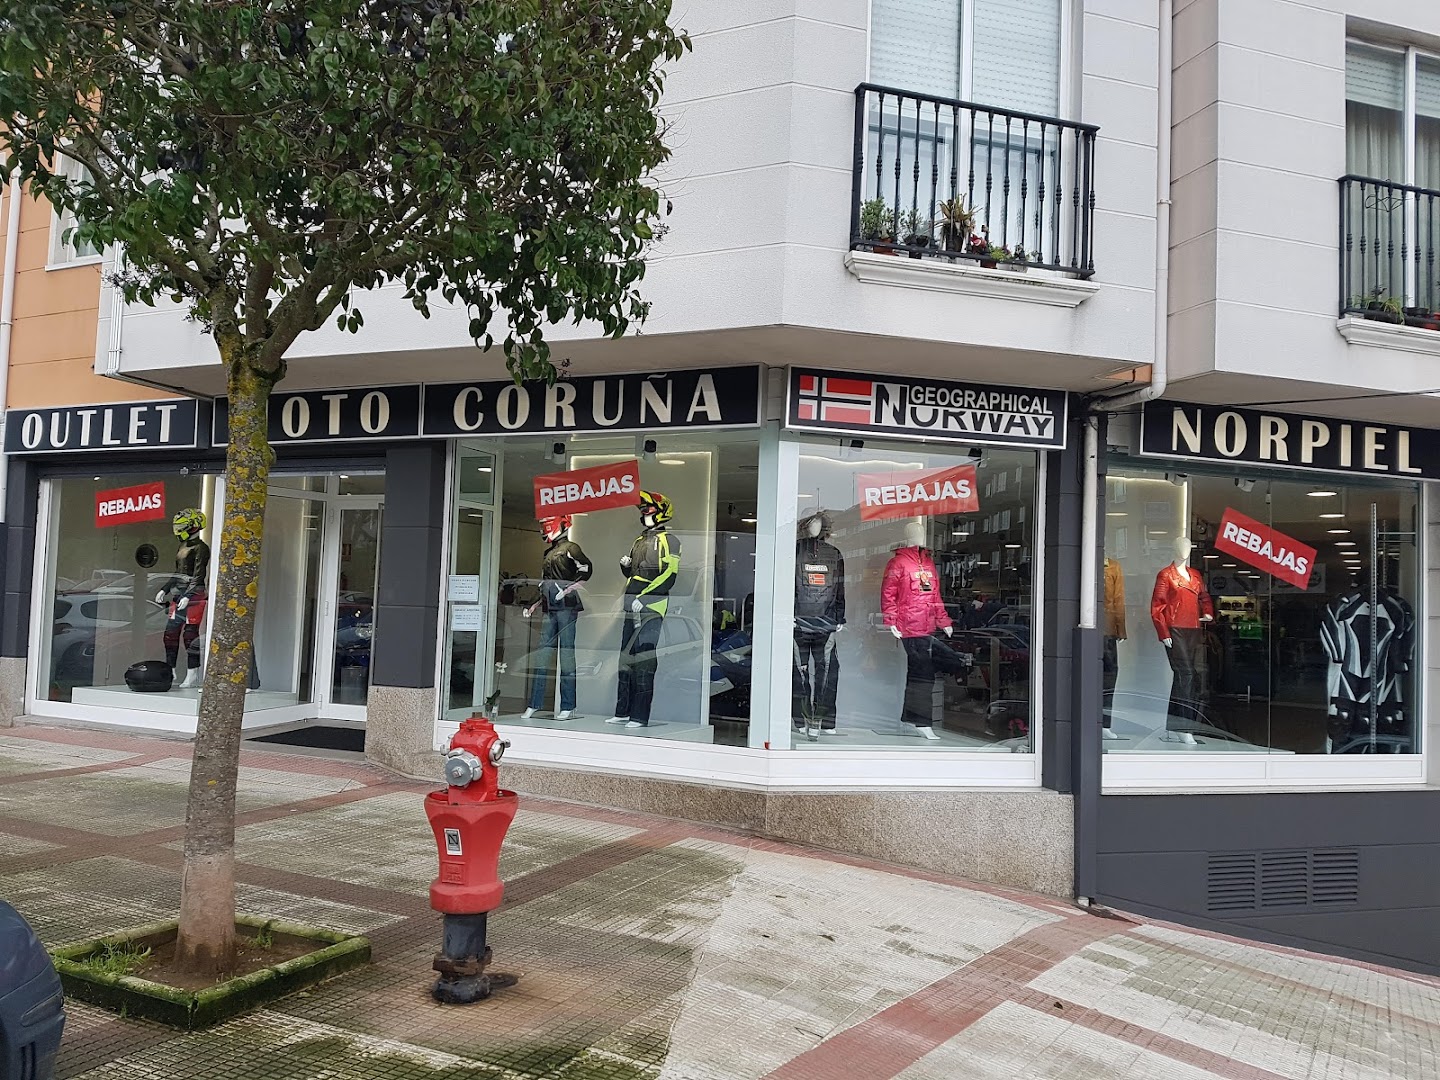 Outlet Moto Coruña